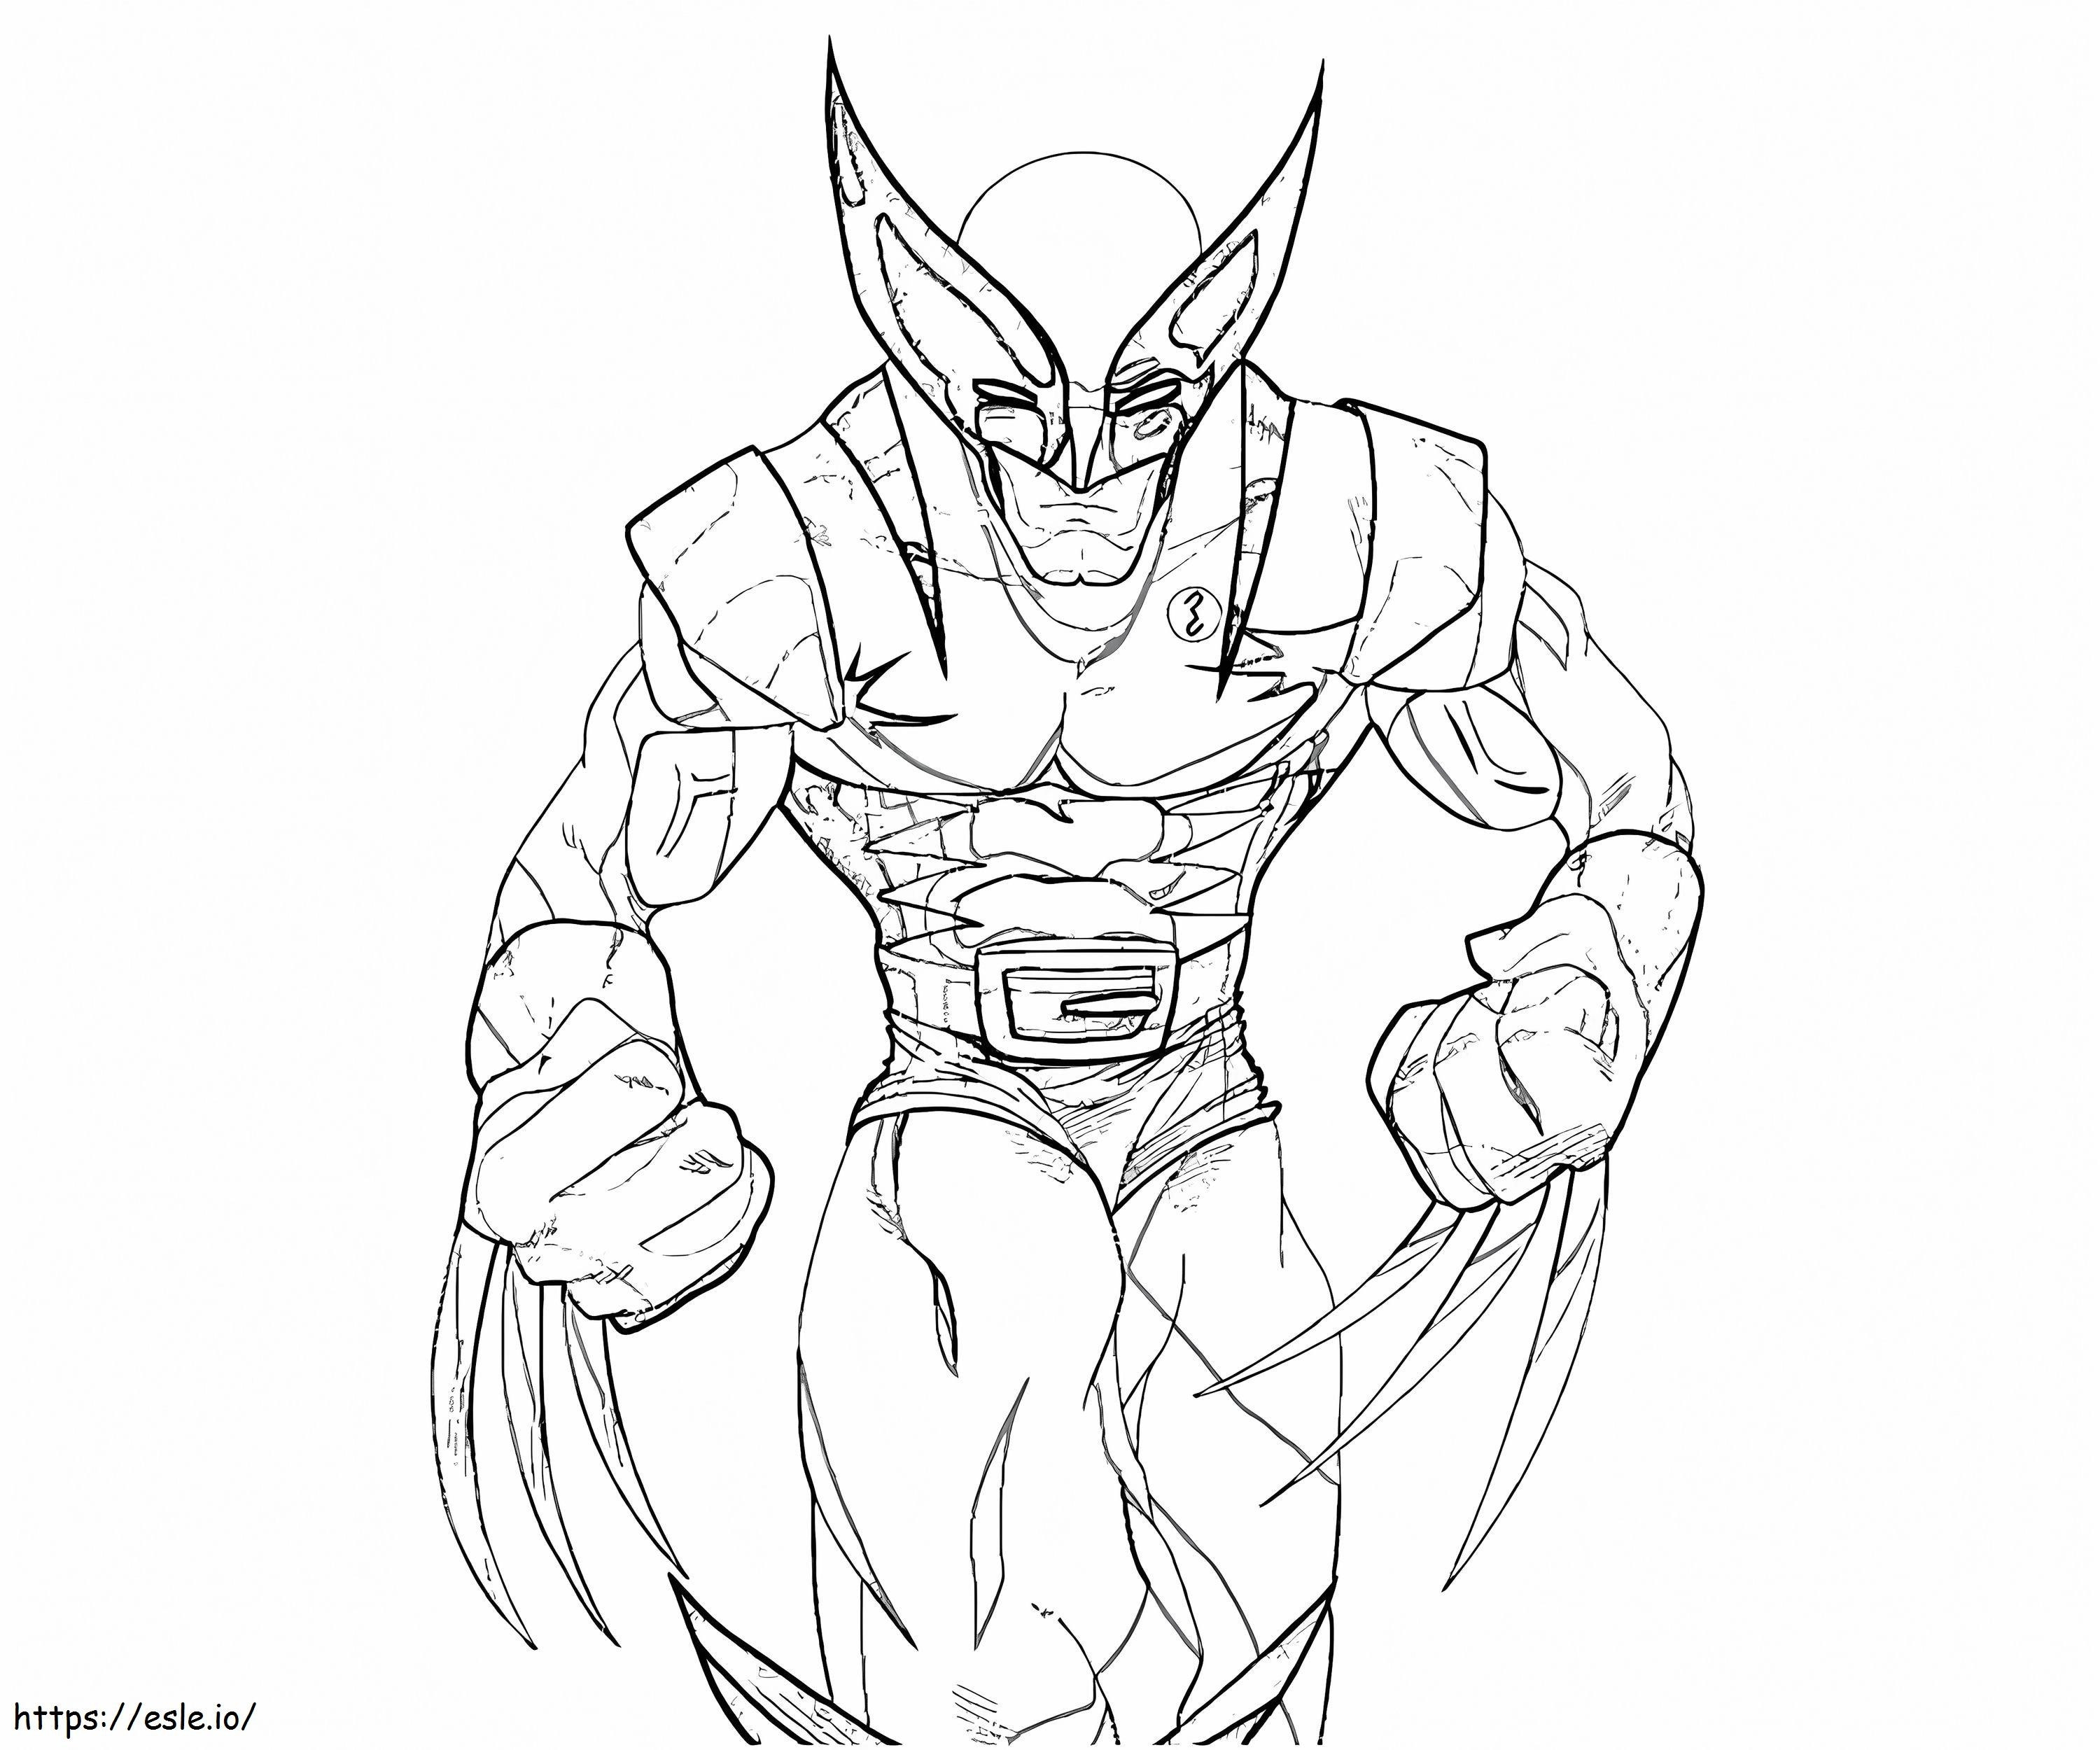 Incrível Wolverine para colorir